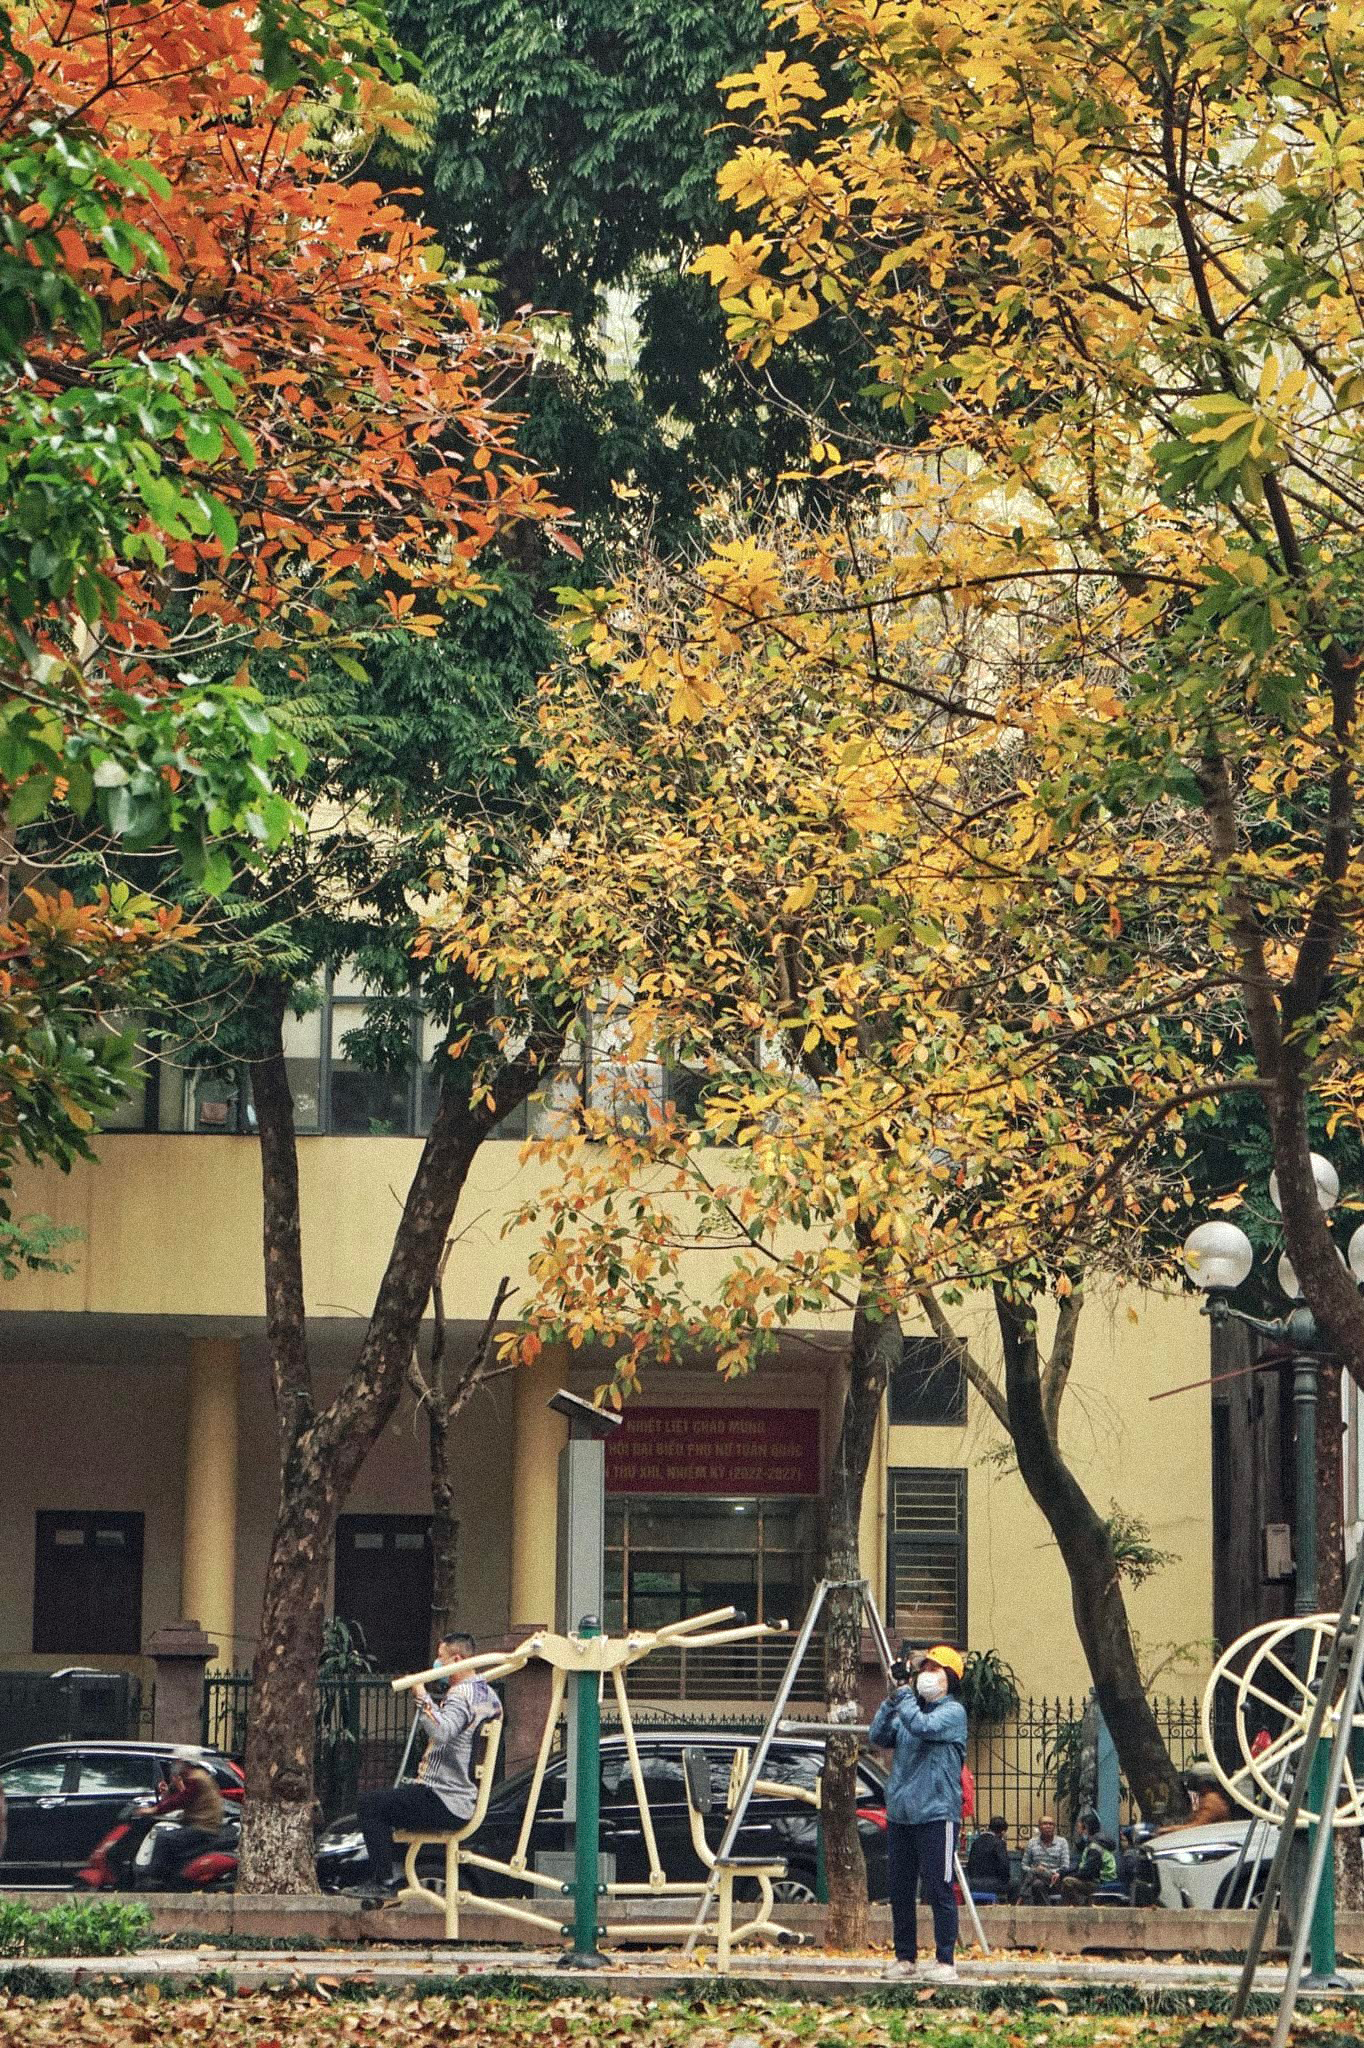  Mùa lá rụng nhanh đến, nhanh đi, nếu muốn lưu lại những bức hình mùa này, bạn nên tranh thủ thời gian dạo quanh phố phường Hà Nội những ngày này. Ảnh: Leotran